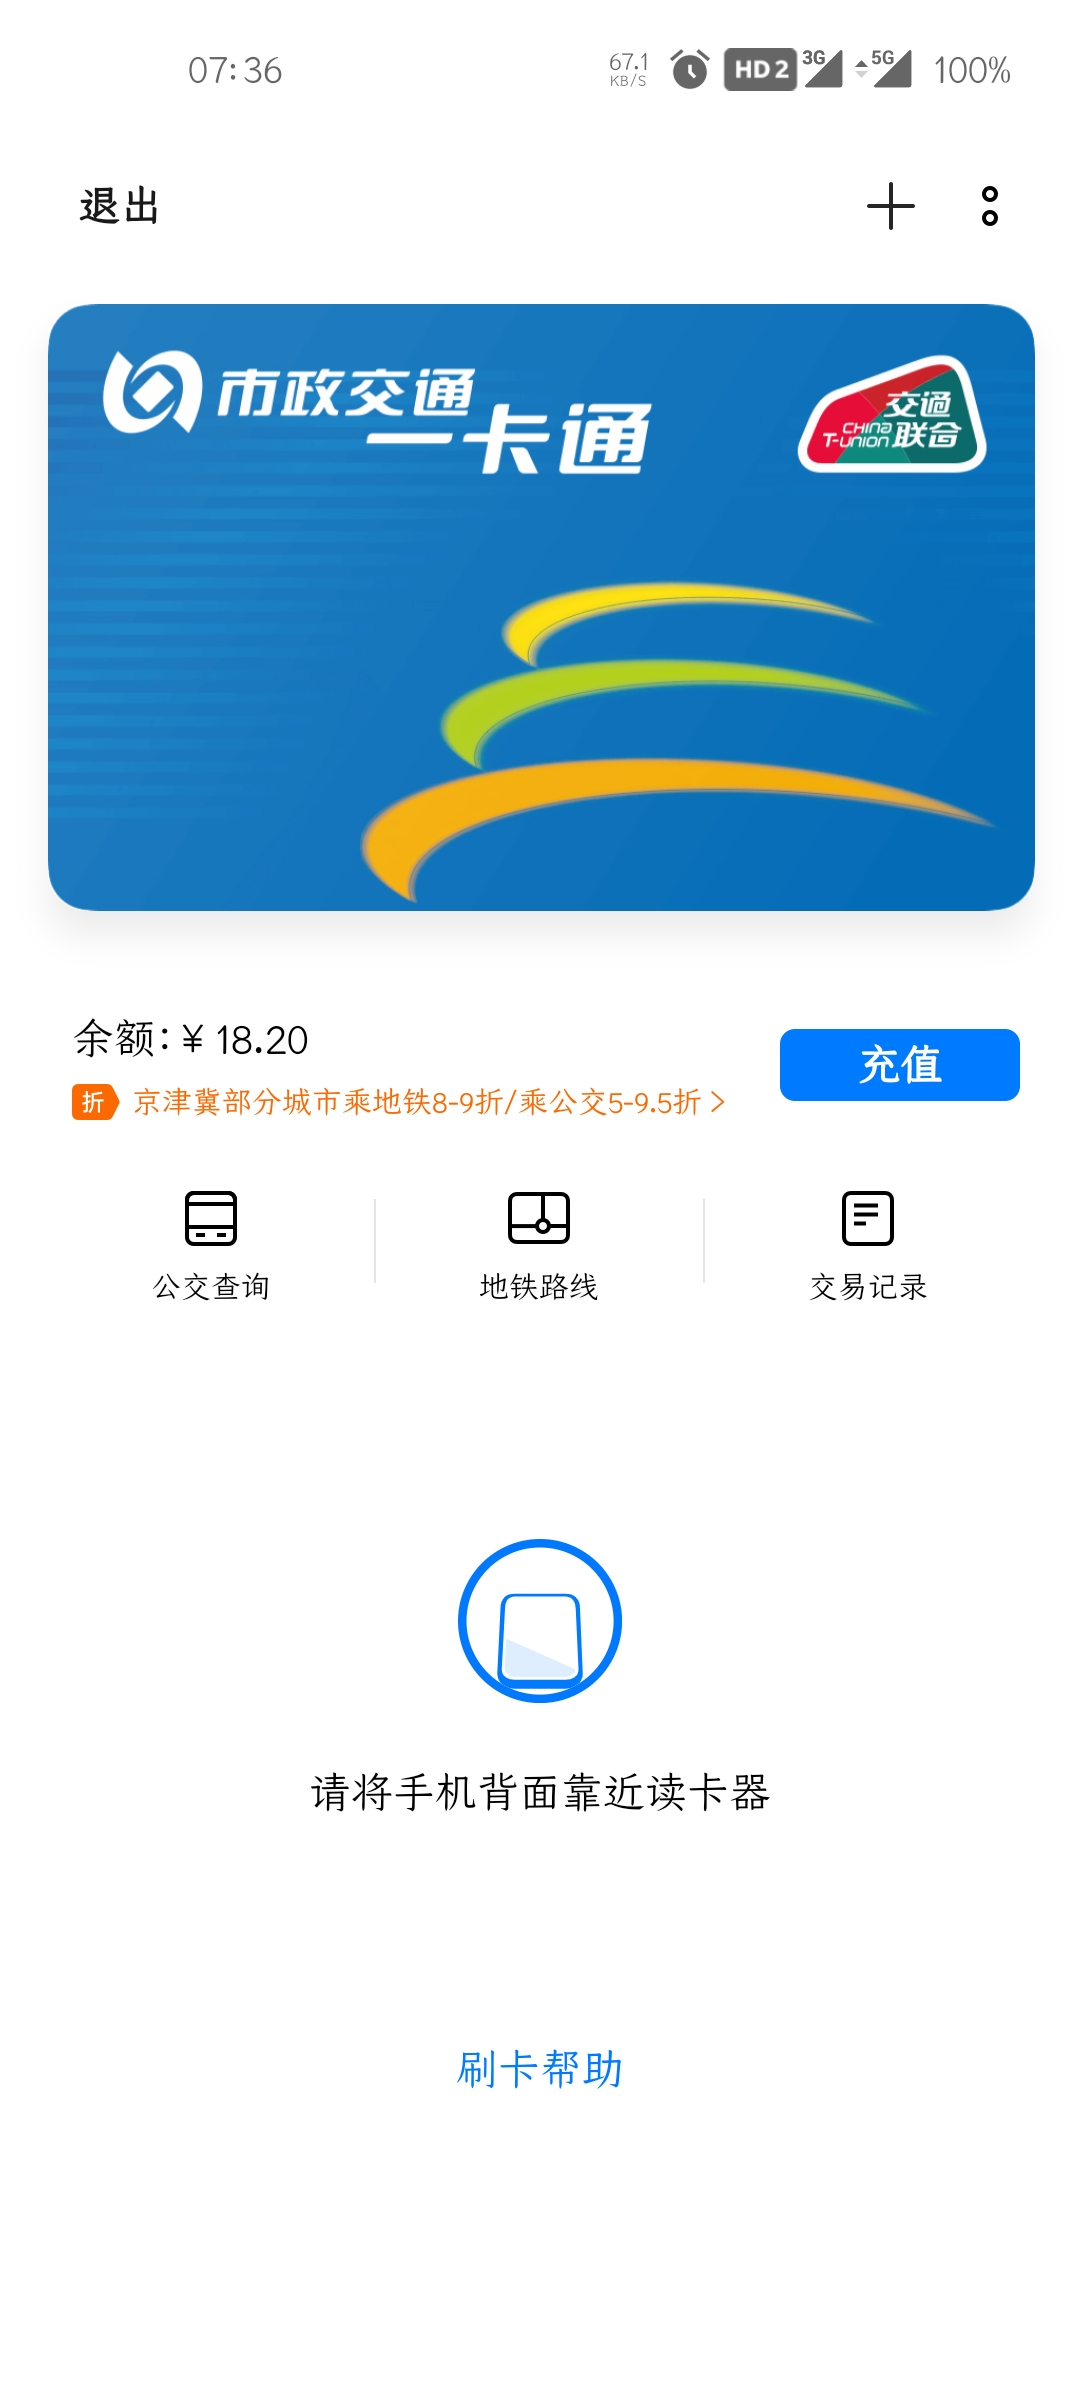 北京一卡通app下载安装_免费下载北京一卡通_北京一卡通客户端